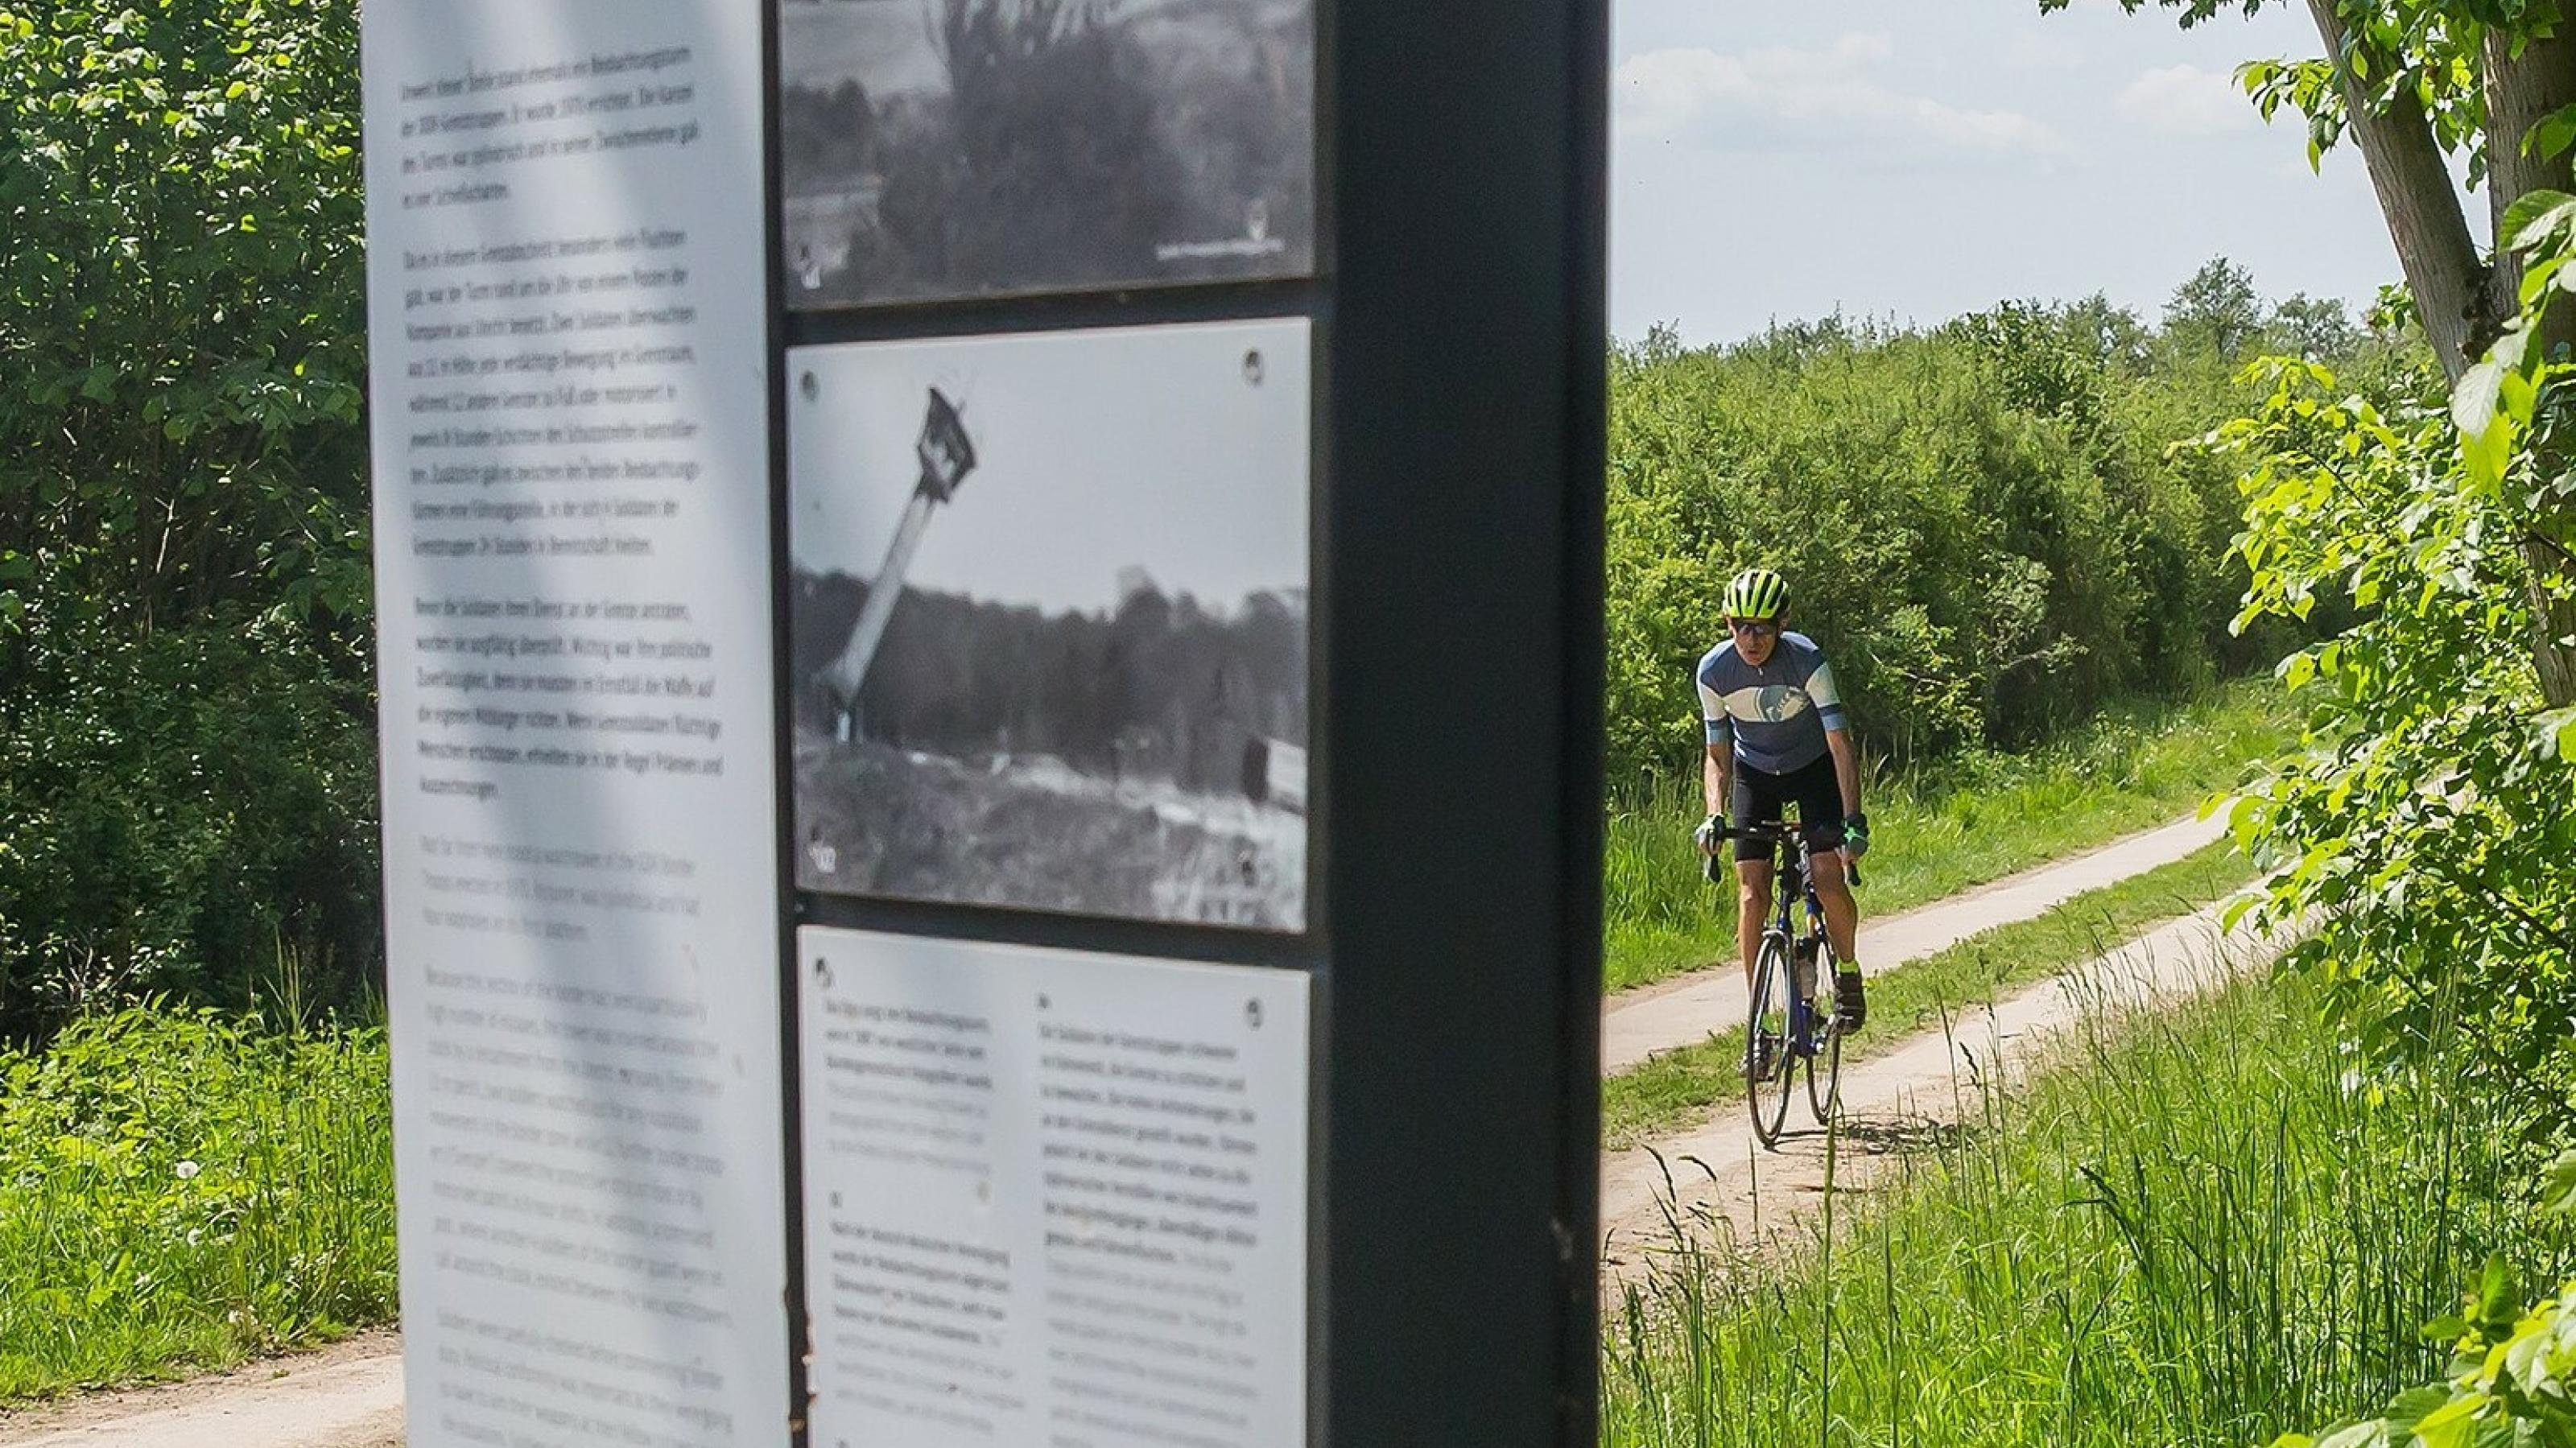 Martin C Roos fährt mit dem Rennrad auf einem alten Kolonnenweg, an dem – im Bildvordergrund – eine Schautafel des Museums zu sehen ist.